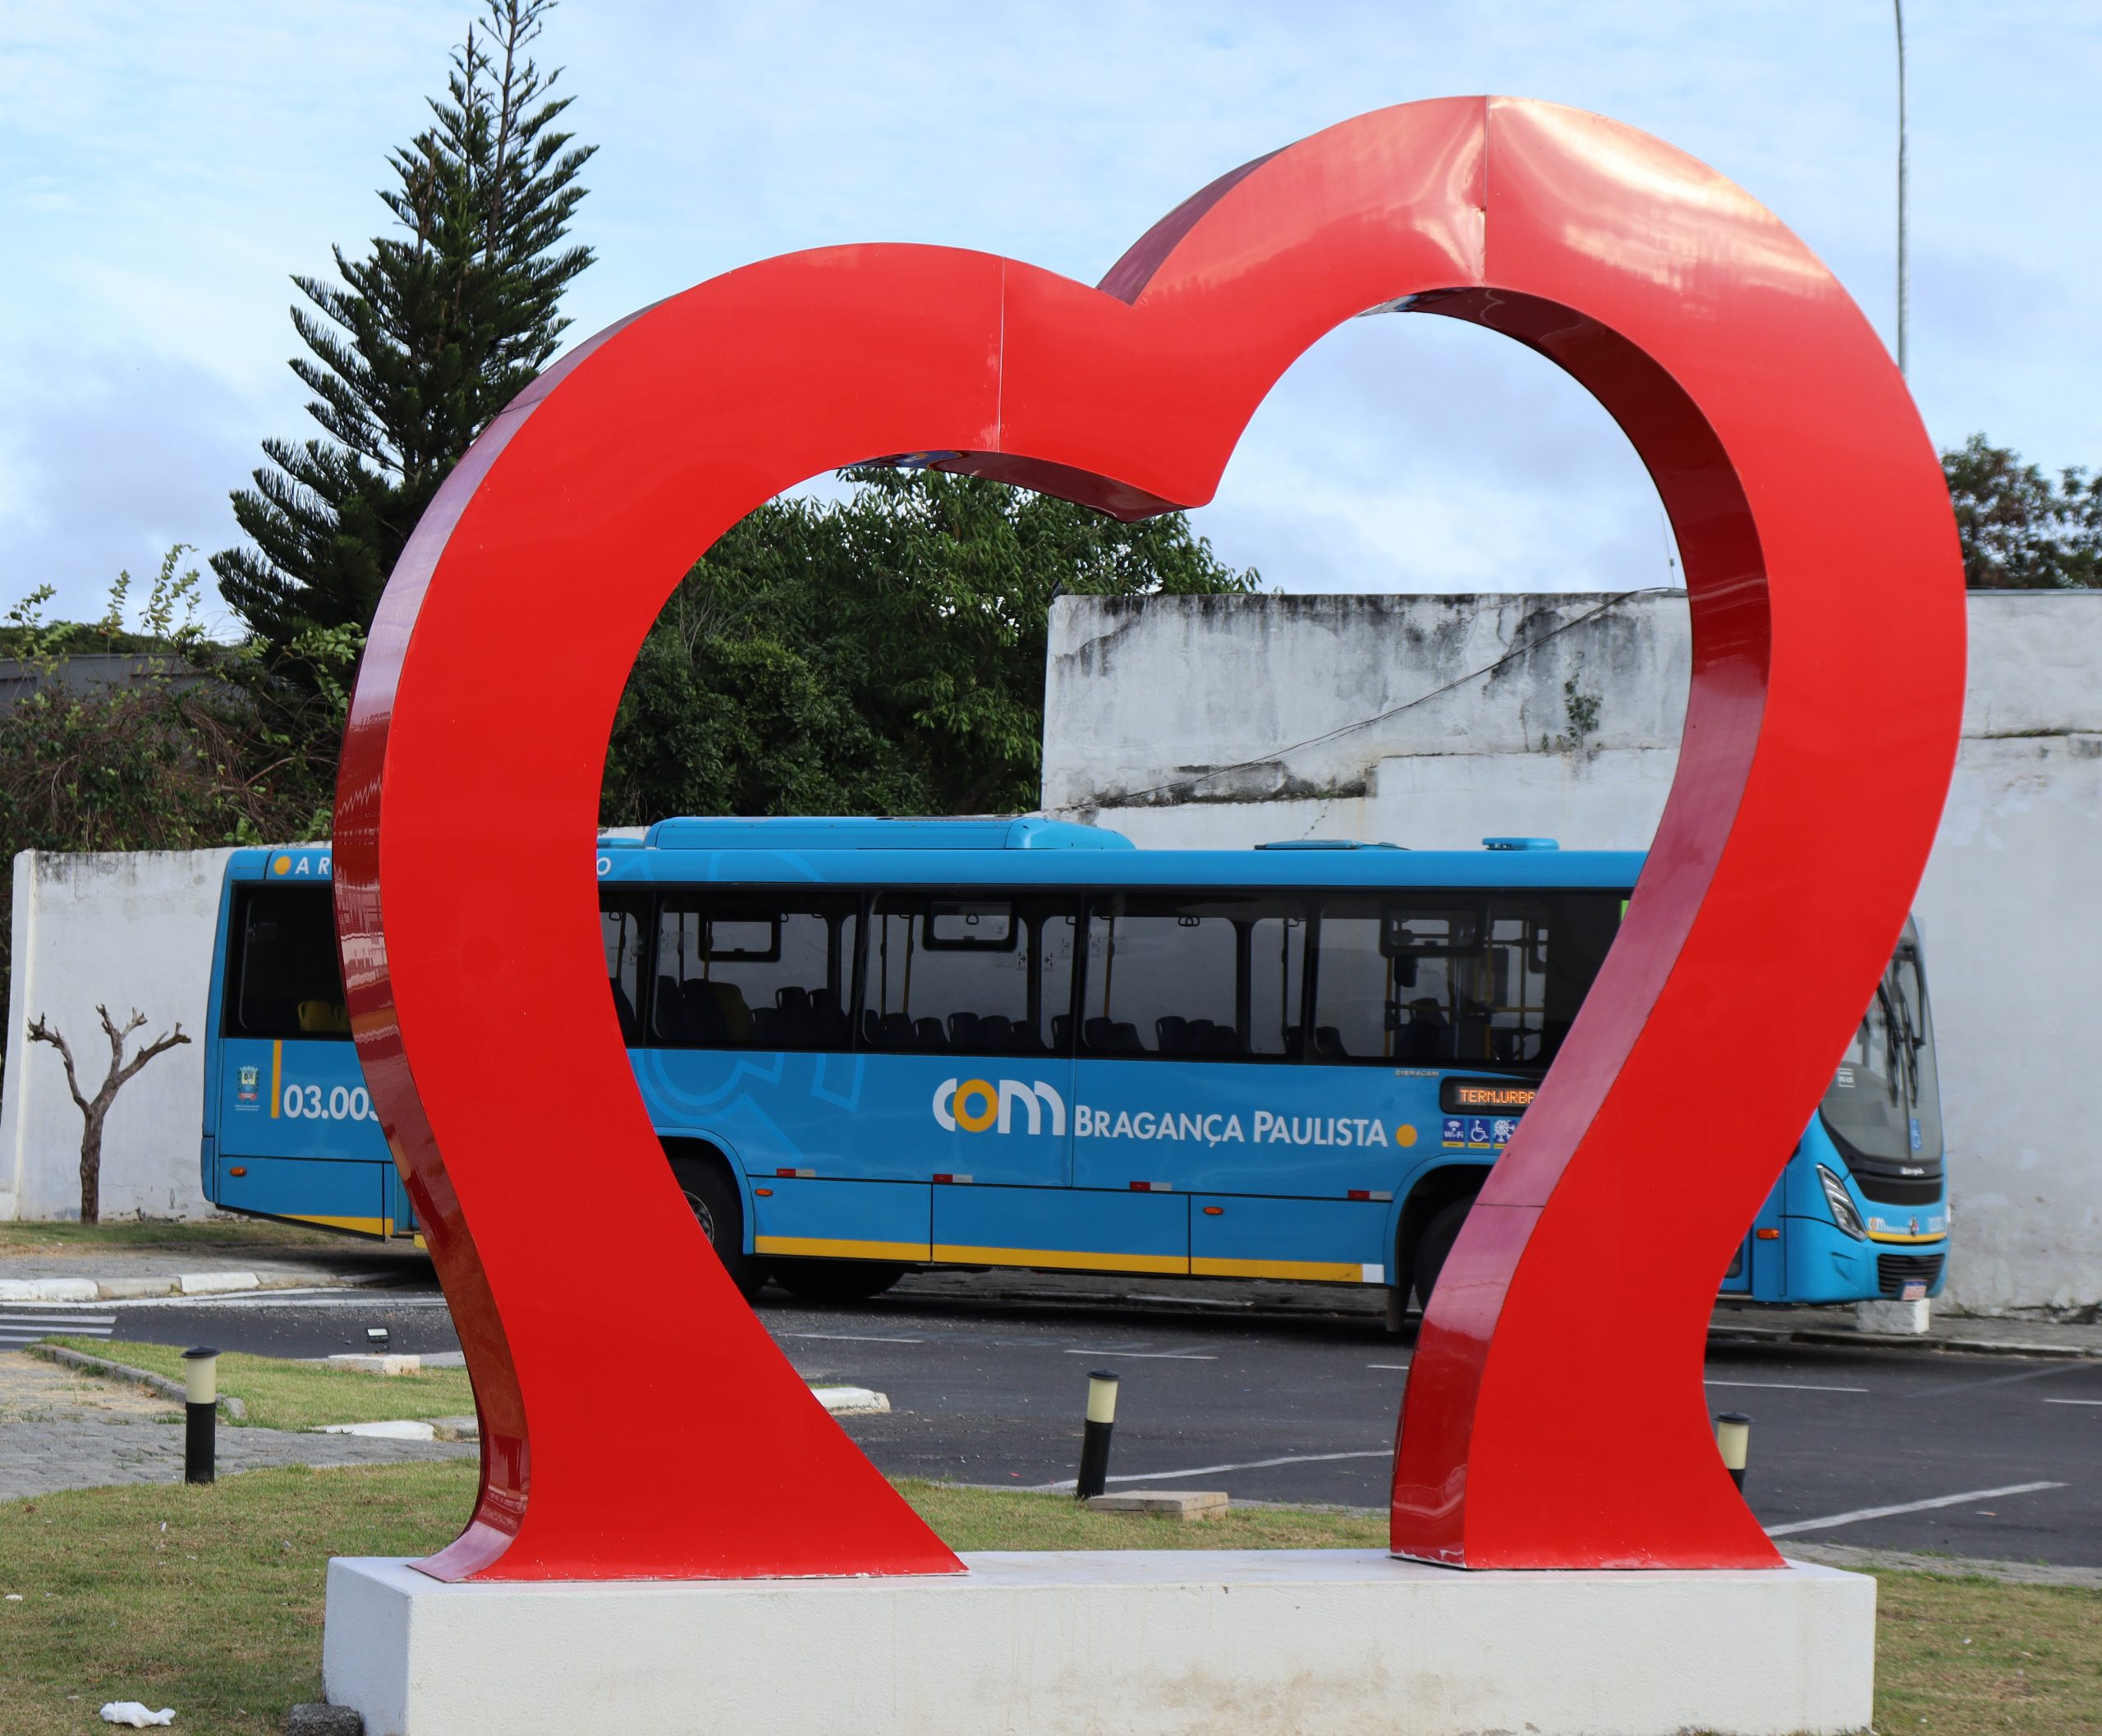 Ônibus da COM ao fundo do coração metálico, um dos cartões postais da cidade de Bragança Paulista anexado ao Terminal.